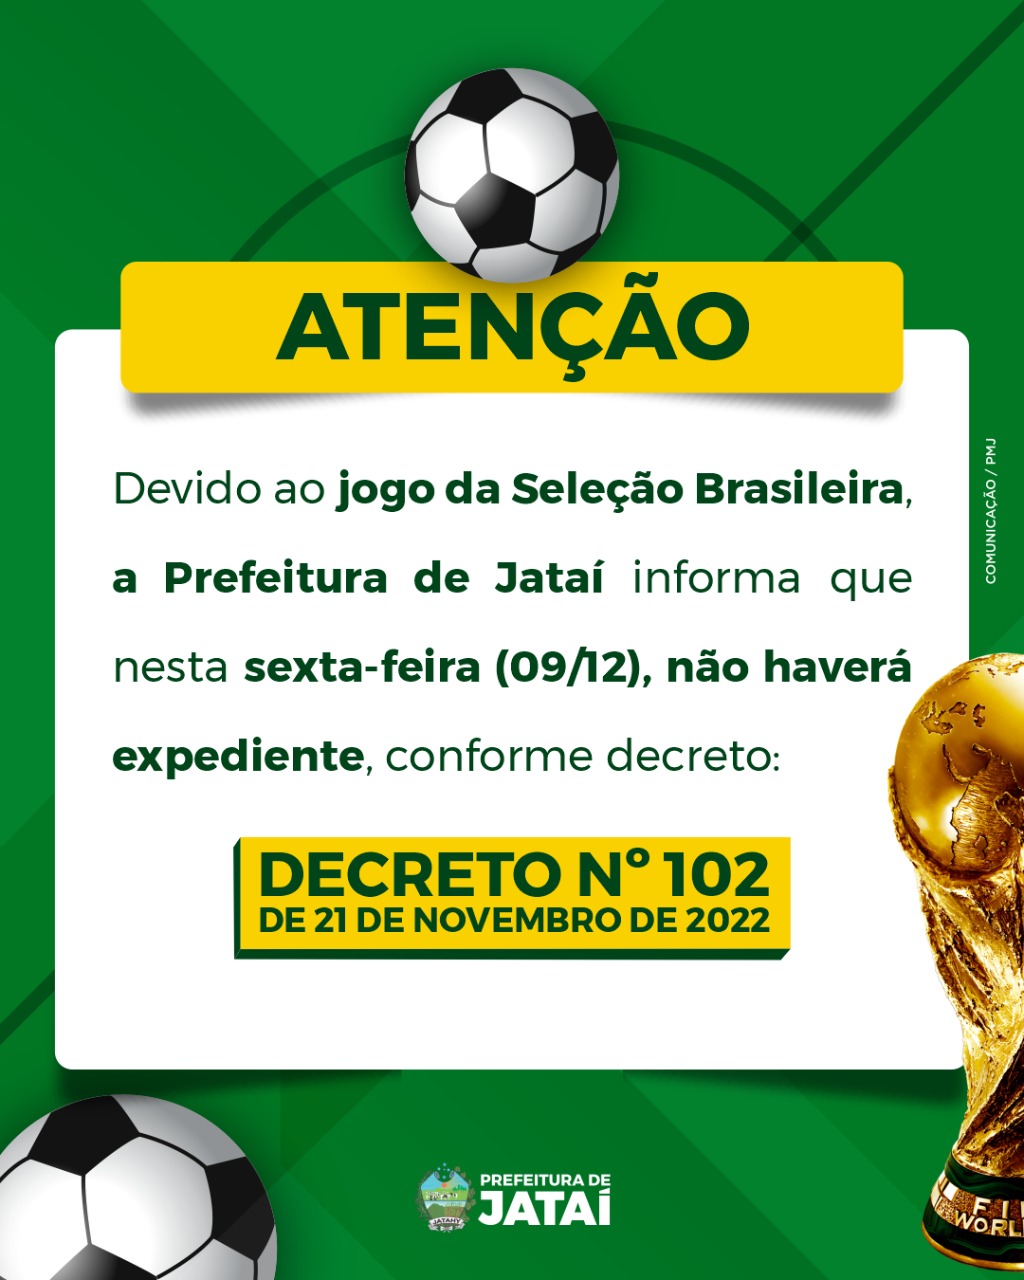 COMUNICADO, Prefeitura suspende expediente nesta sexta-feira em virtude do  jogo do Brasil